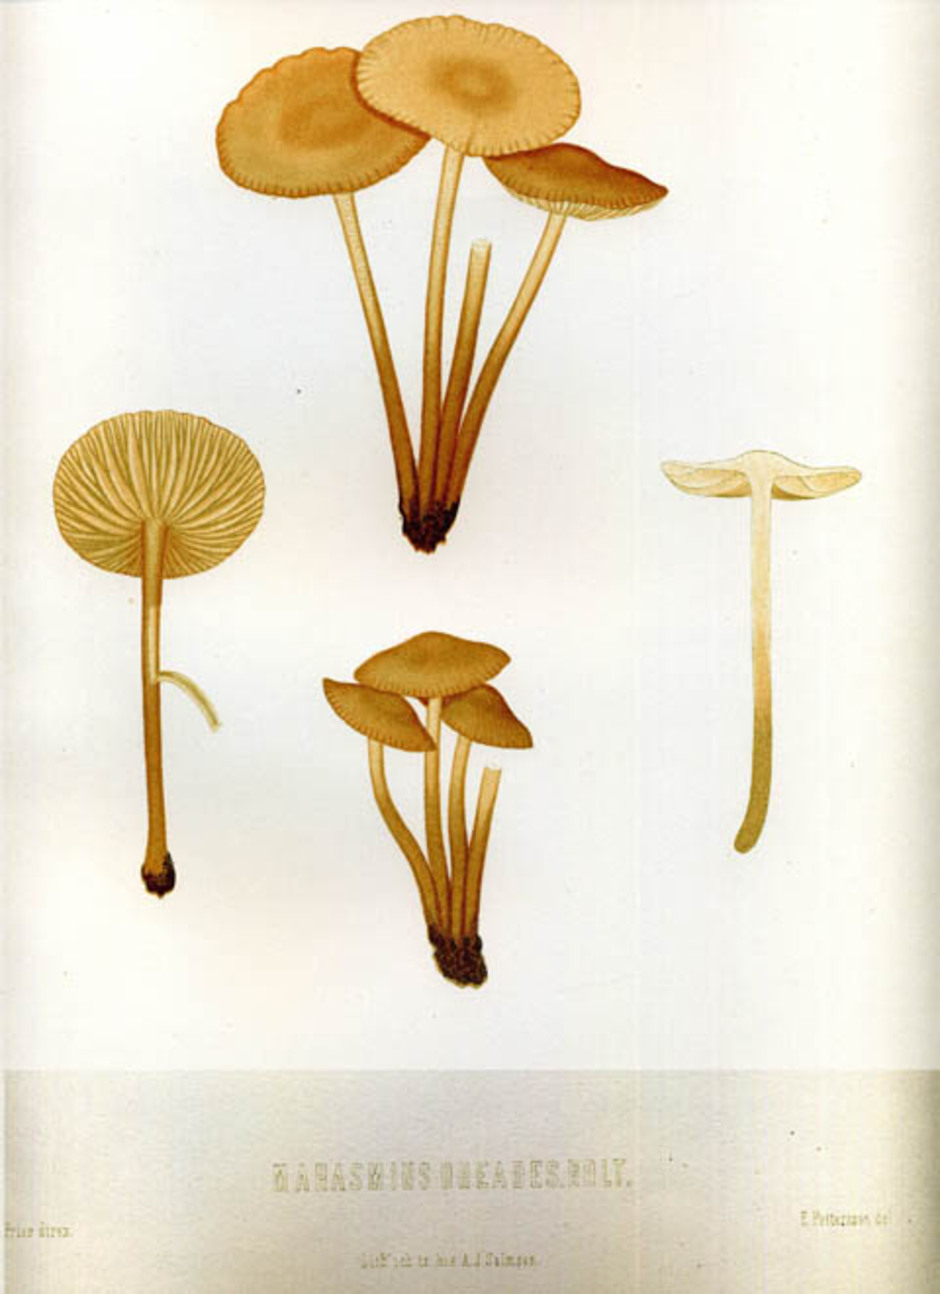 Nejlikbrosking (Marasmius oreades) planch XXXI från Elias Fries "Sveriges ätliga och giftiga svampar" (1860-66). Målat av Elias Pettersson under vägledning av Elias Fries